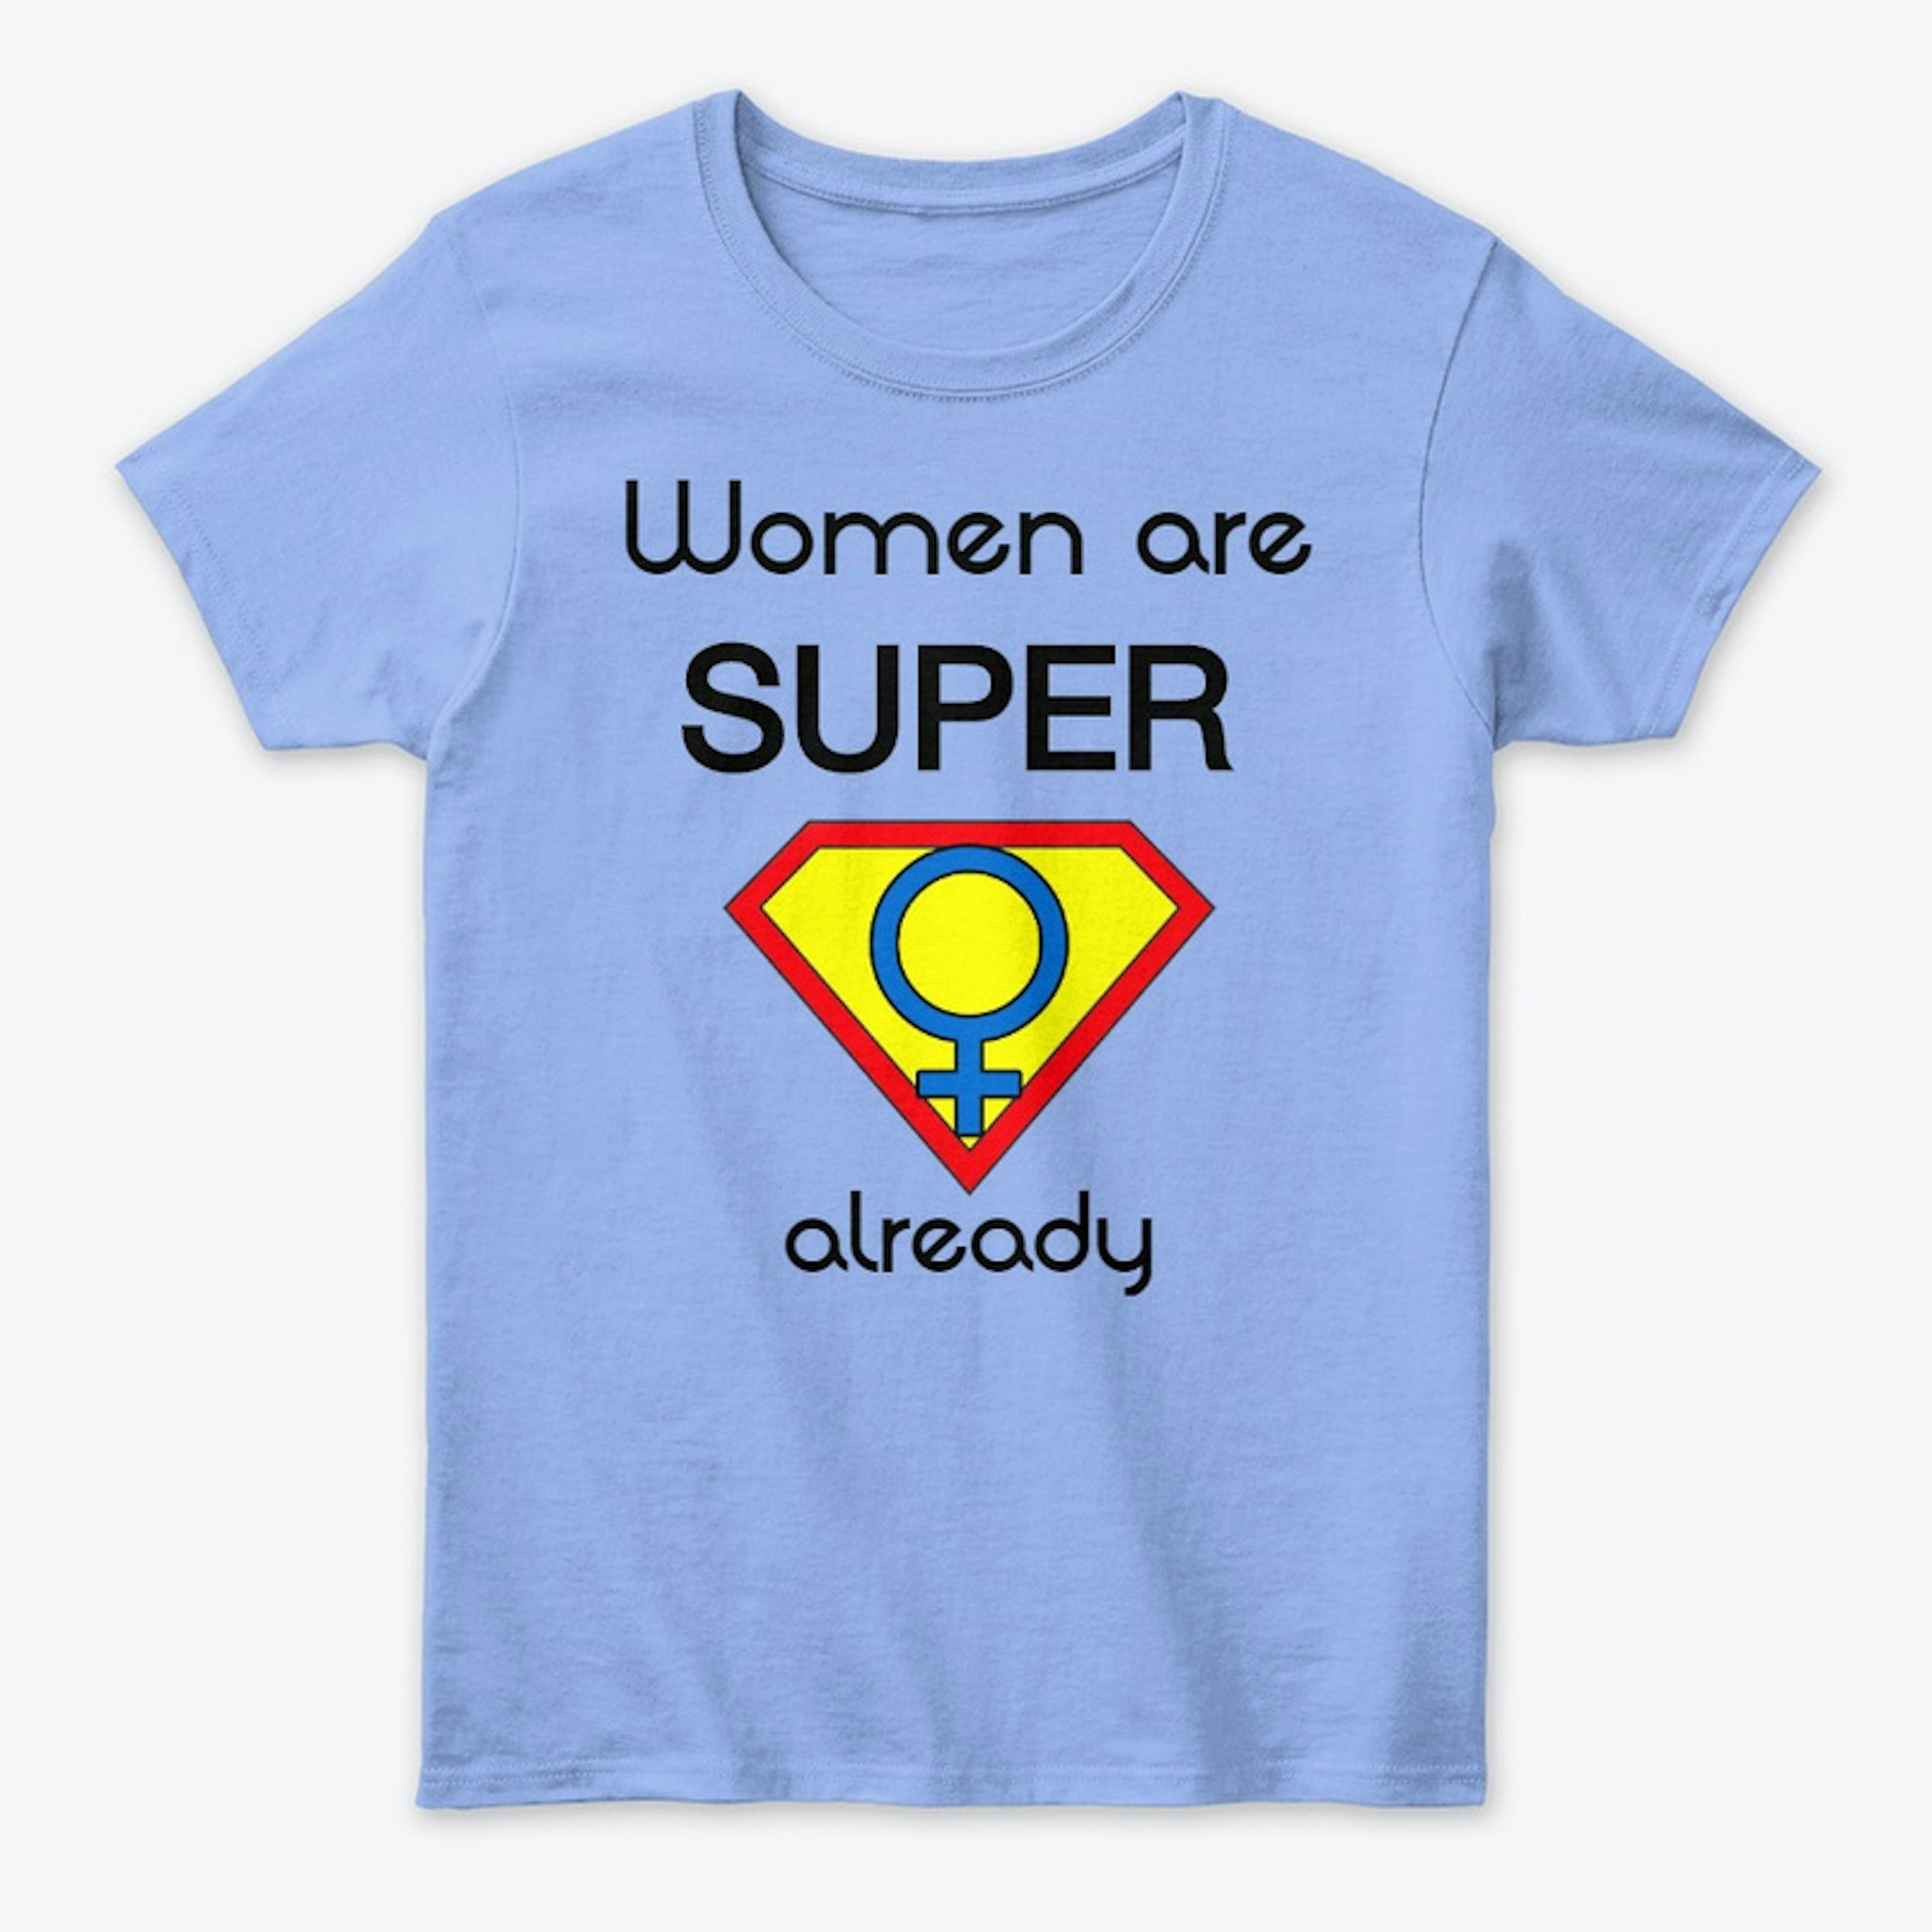 Women are Super already